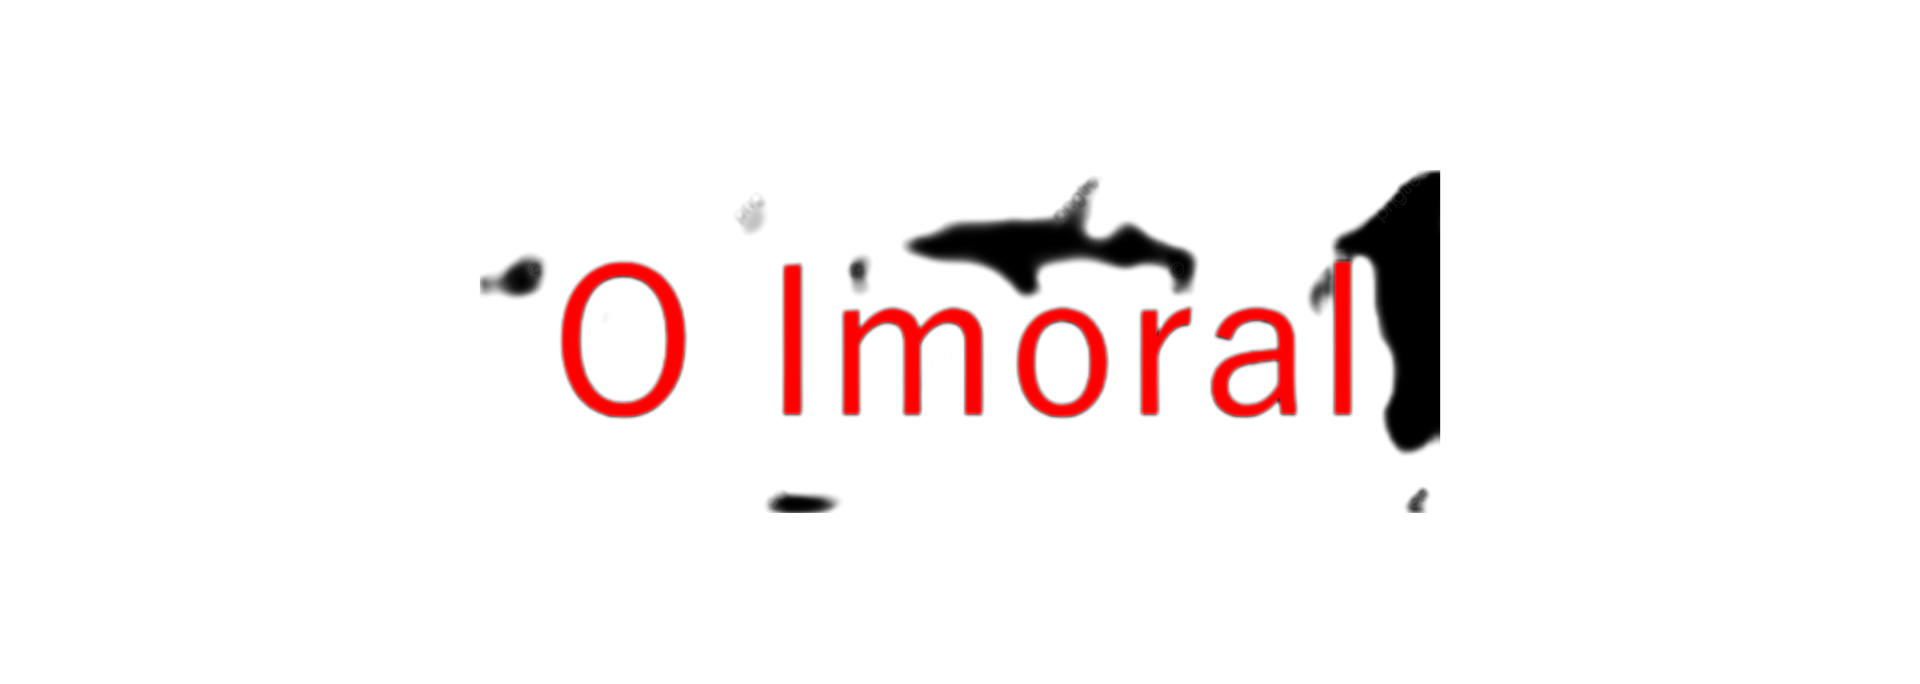 O imoral